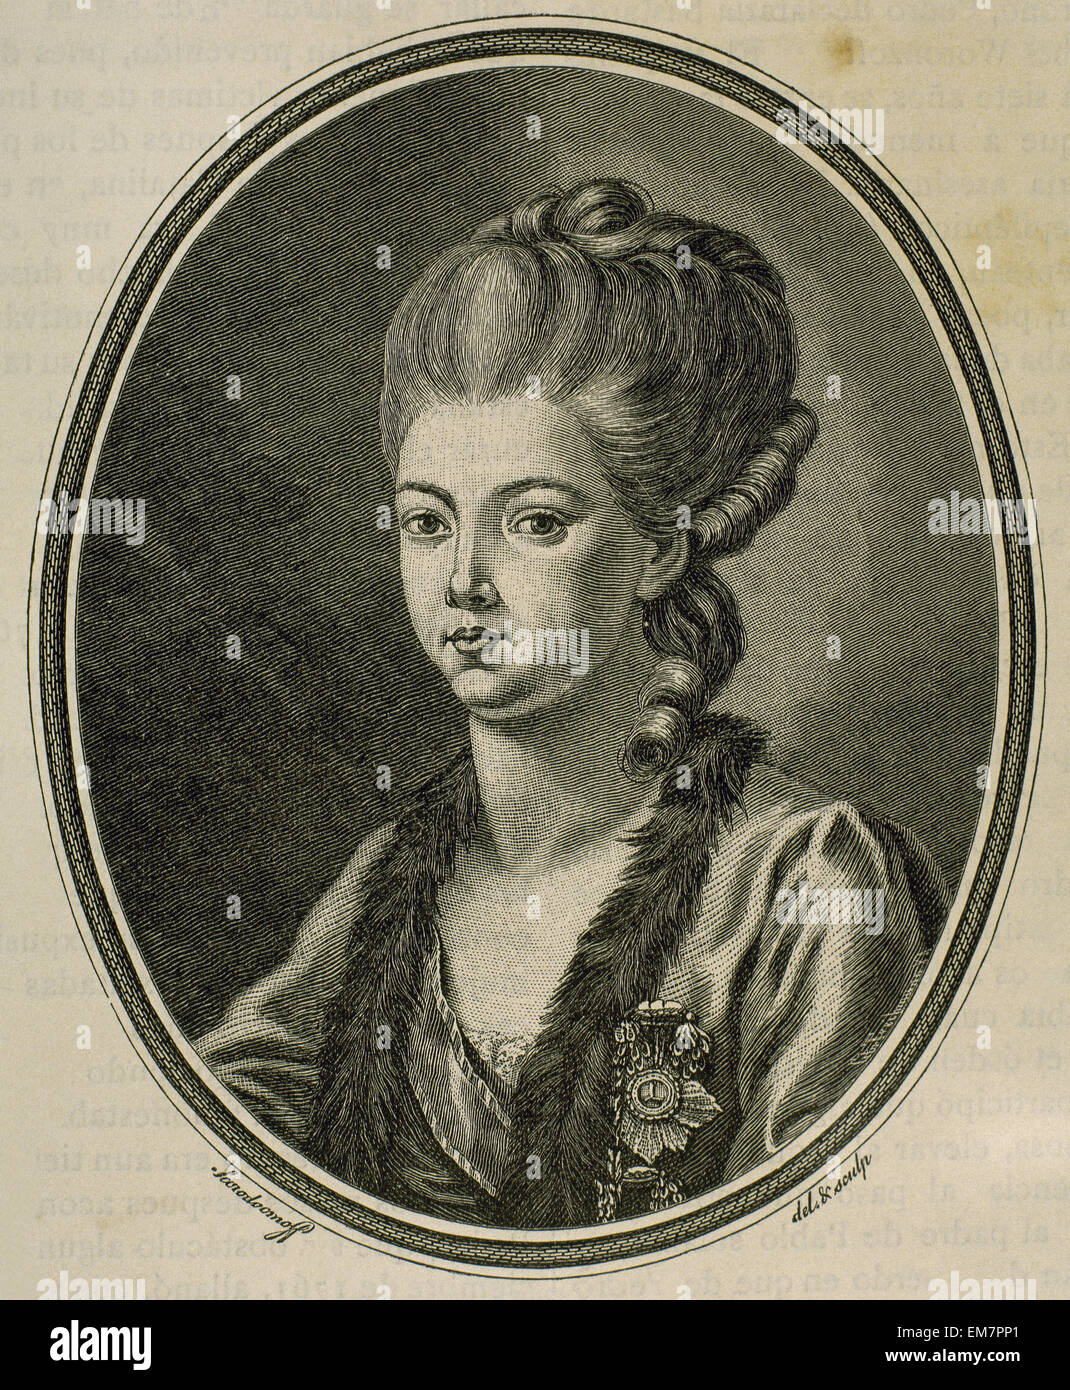 Prinzessin Daschkaw (18. Jh.), Dame von Ehre, Catherine II von Rußland. Porträt. Kupferstich von Treibmann, 1881. Stockfoto